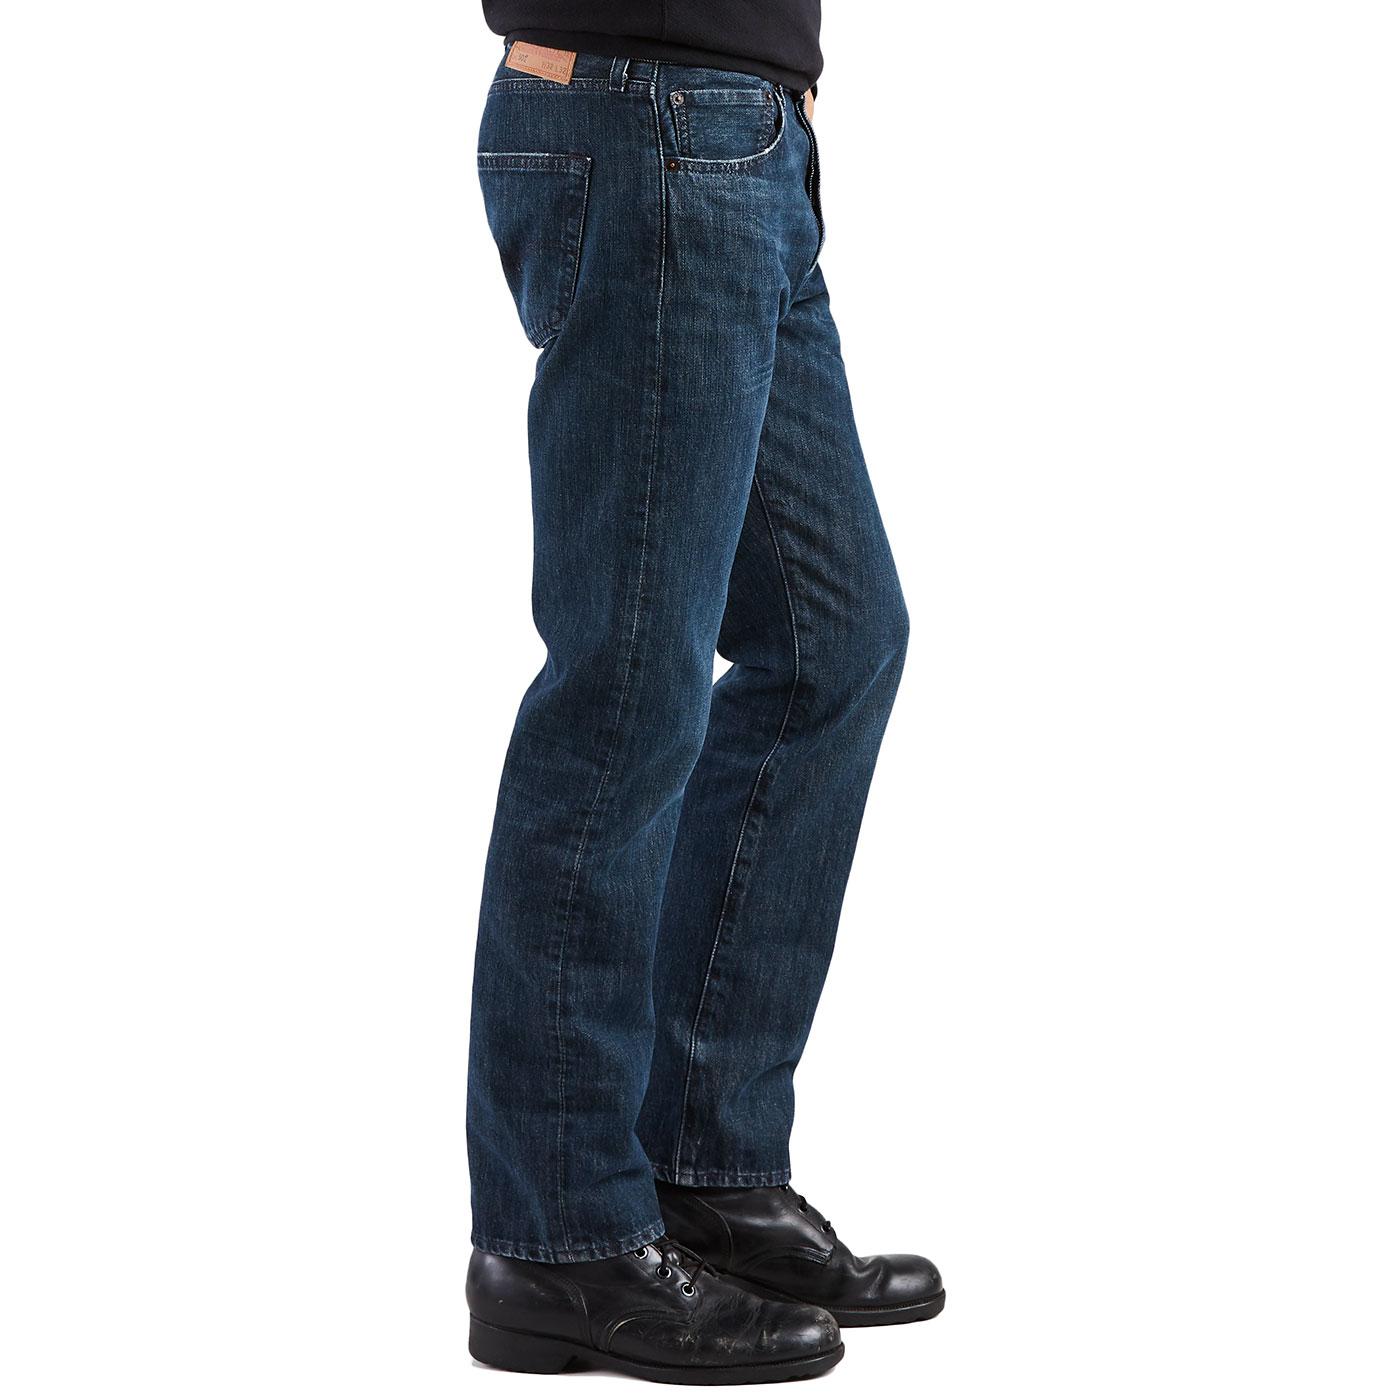 LEVI'S 501 Men's Retro Mod Original Straight Jeans in Snoot